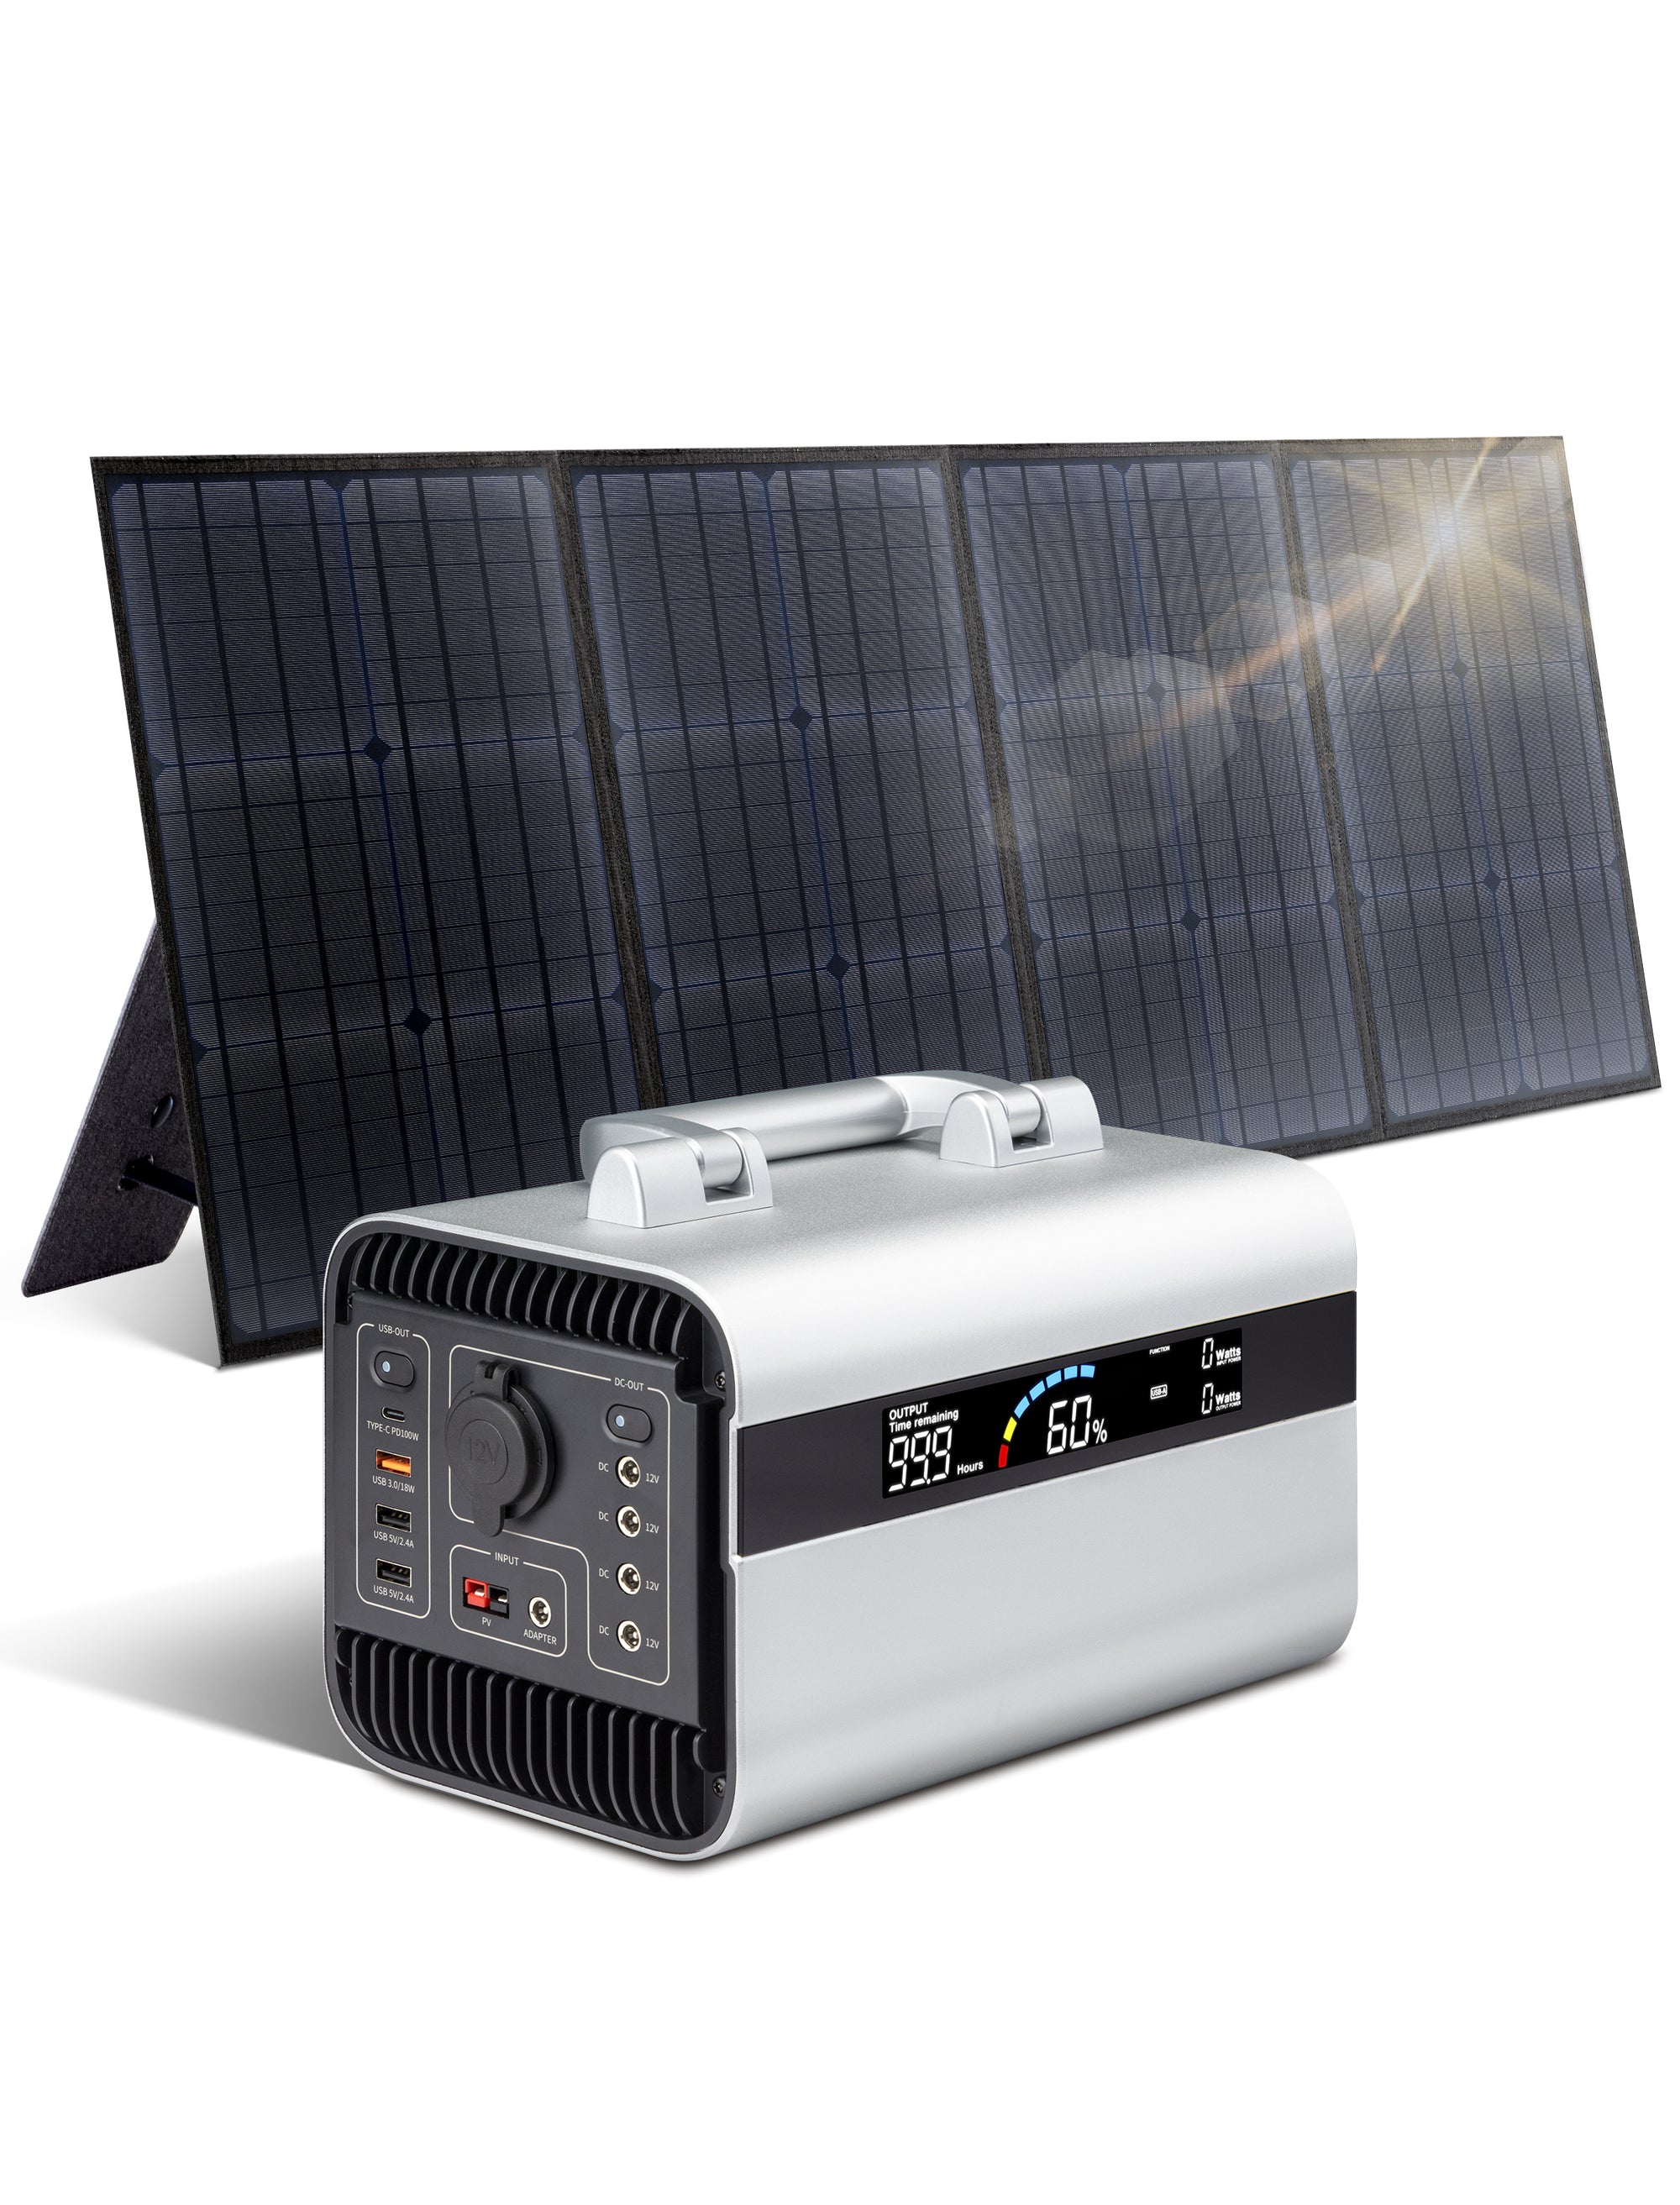 محطة طاقة محمولة بقوة 600 واط مع مولد شمسي بقوة 100 واط مع لوحات شمسية للتخييم في الهواء الطلق، والرحلات القصيرة، وانقطاع التيار الكهربائي